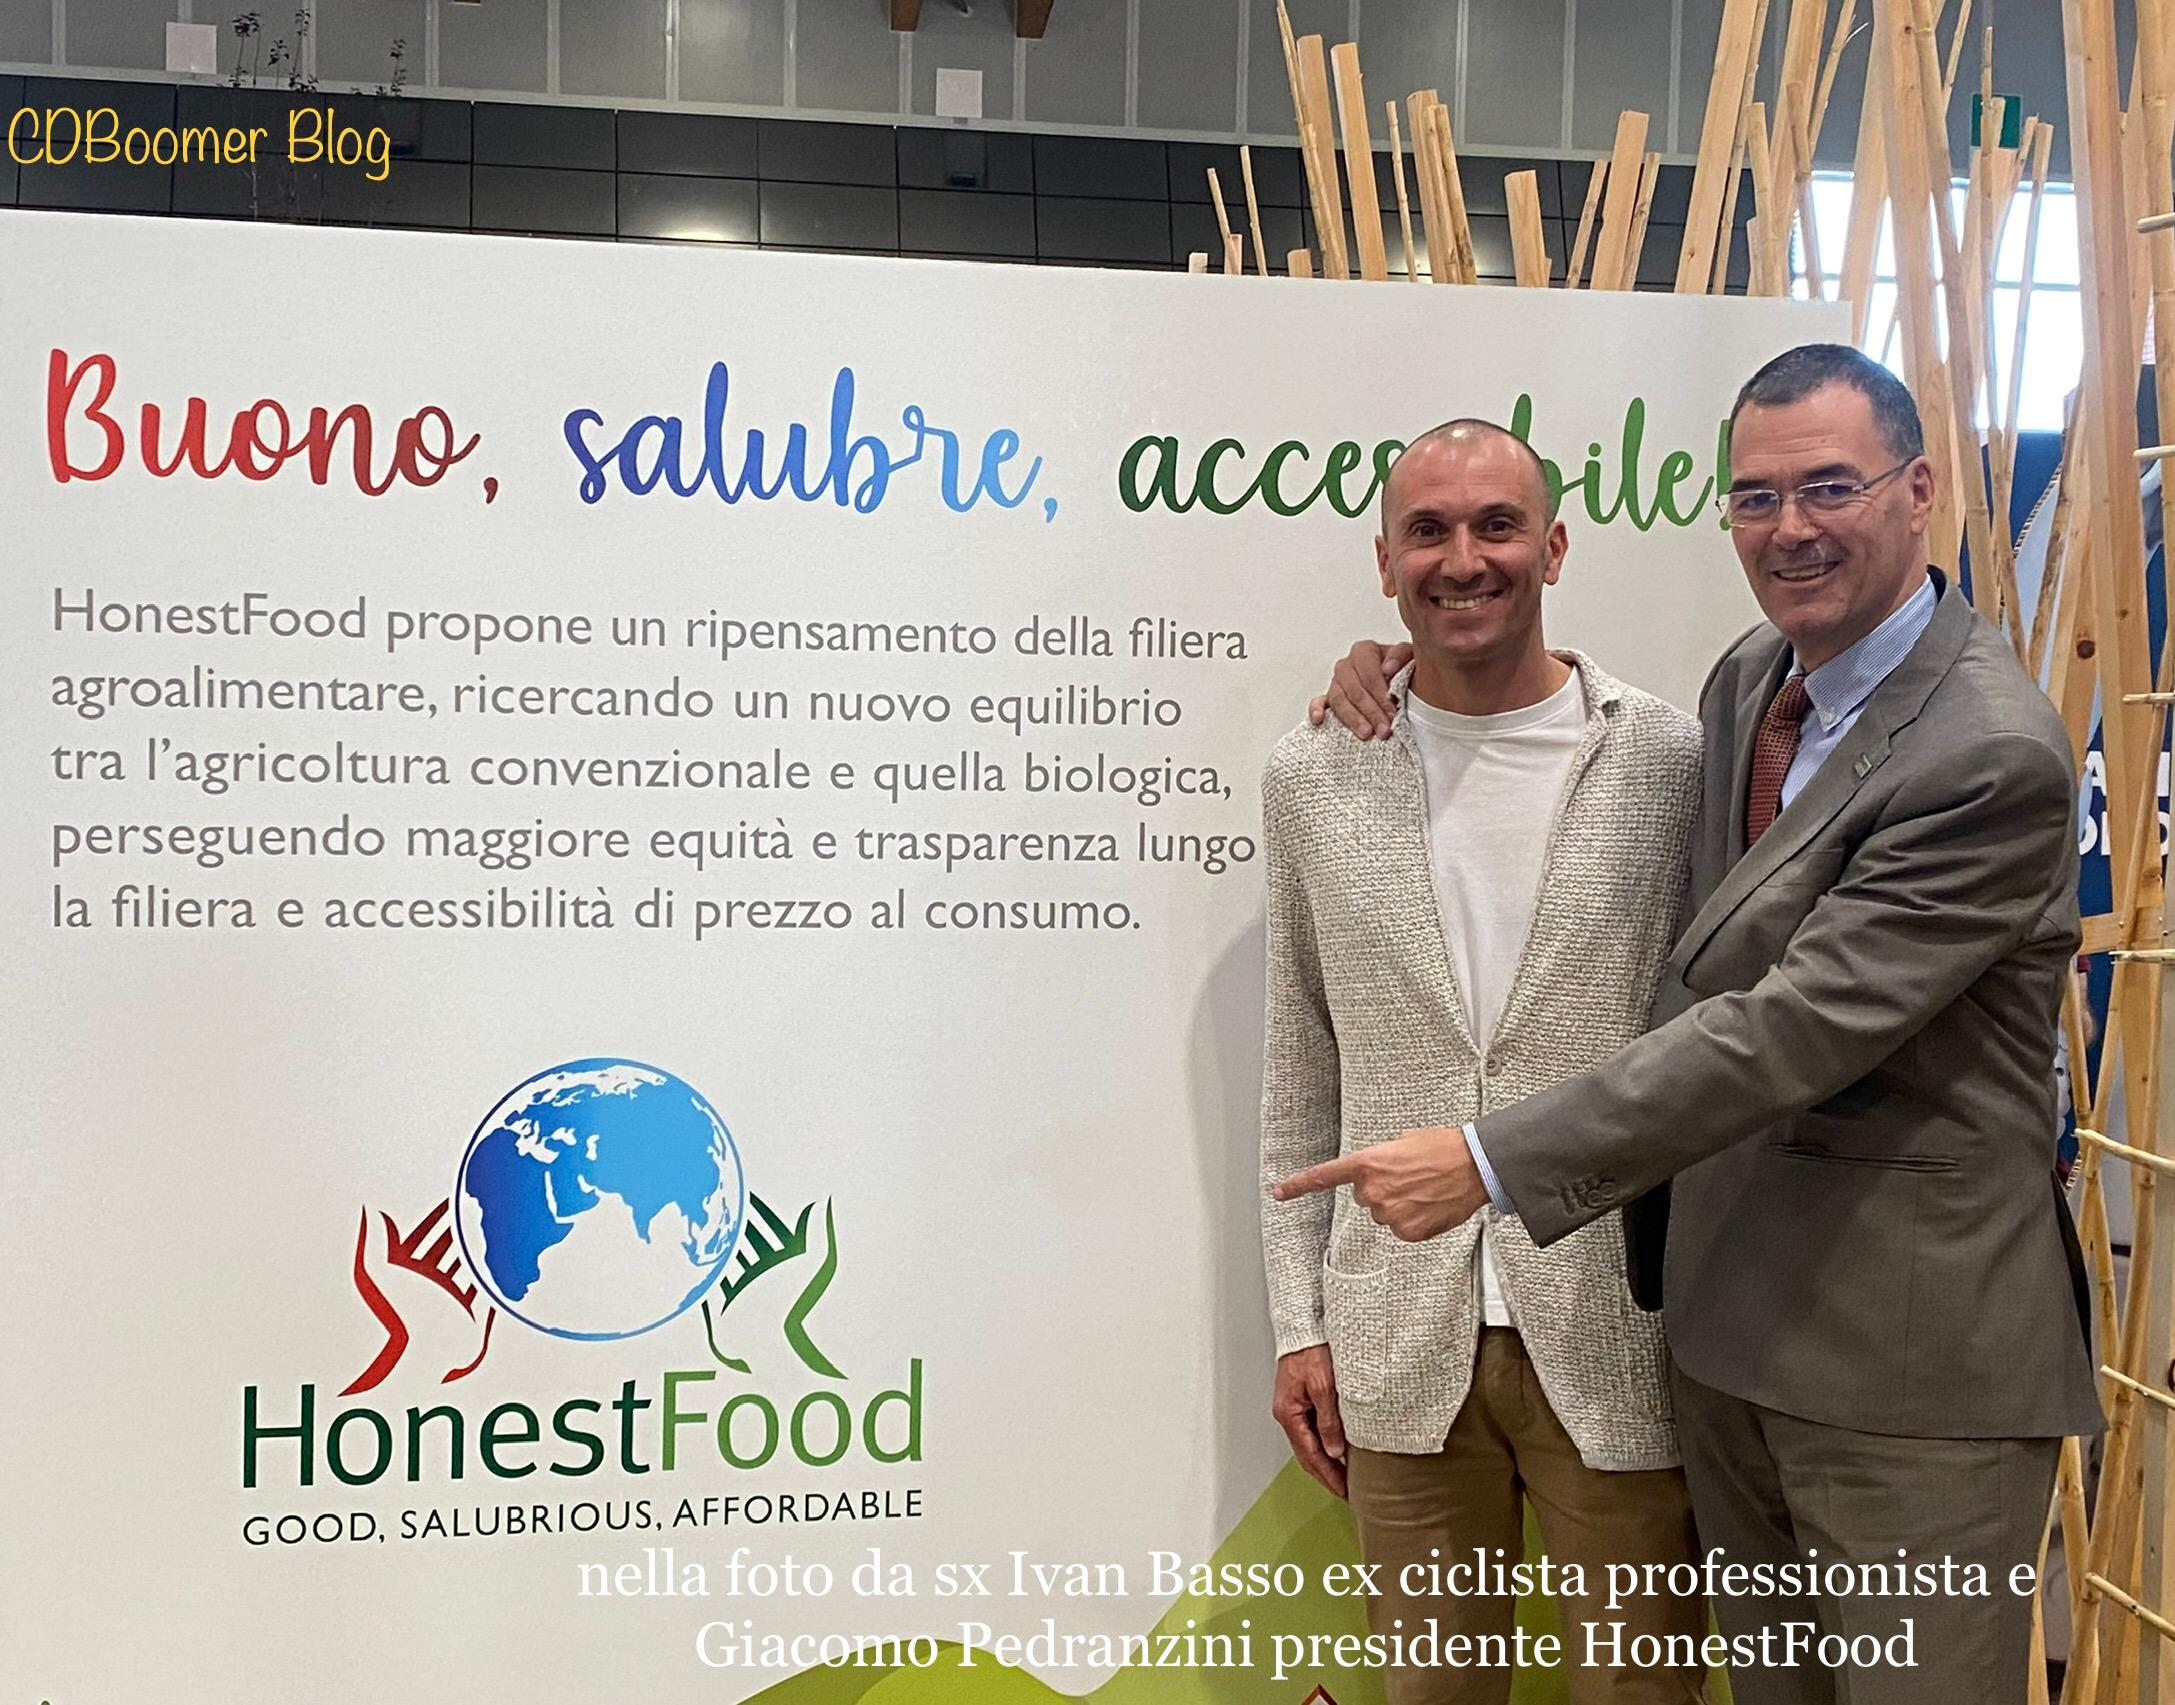 Nasce HonestFood: l’Associazione per un cibo buono, salubre e ad un prezzo accessibile L’83% per cento dei consumatori è disposto ad acquistare un alimento più caro  ma prodotto rispettando l’equilibrio di tutta la filiera agroalimentare